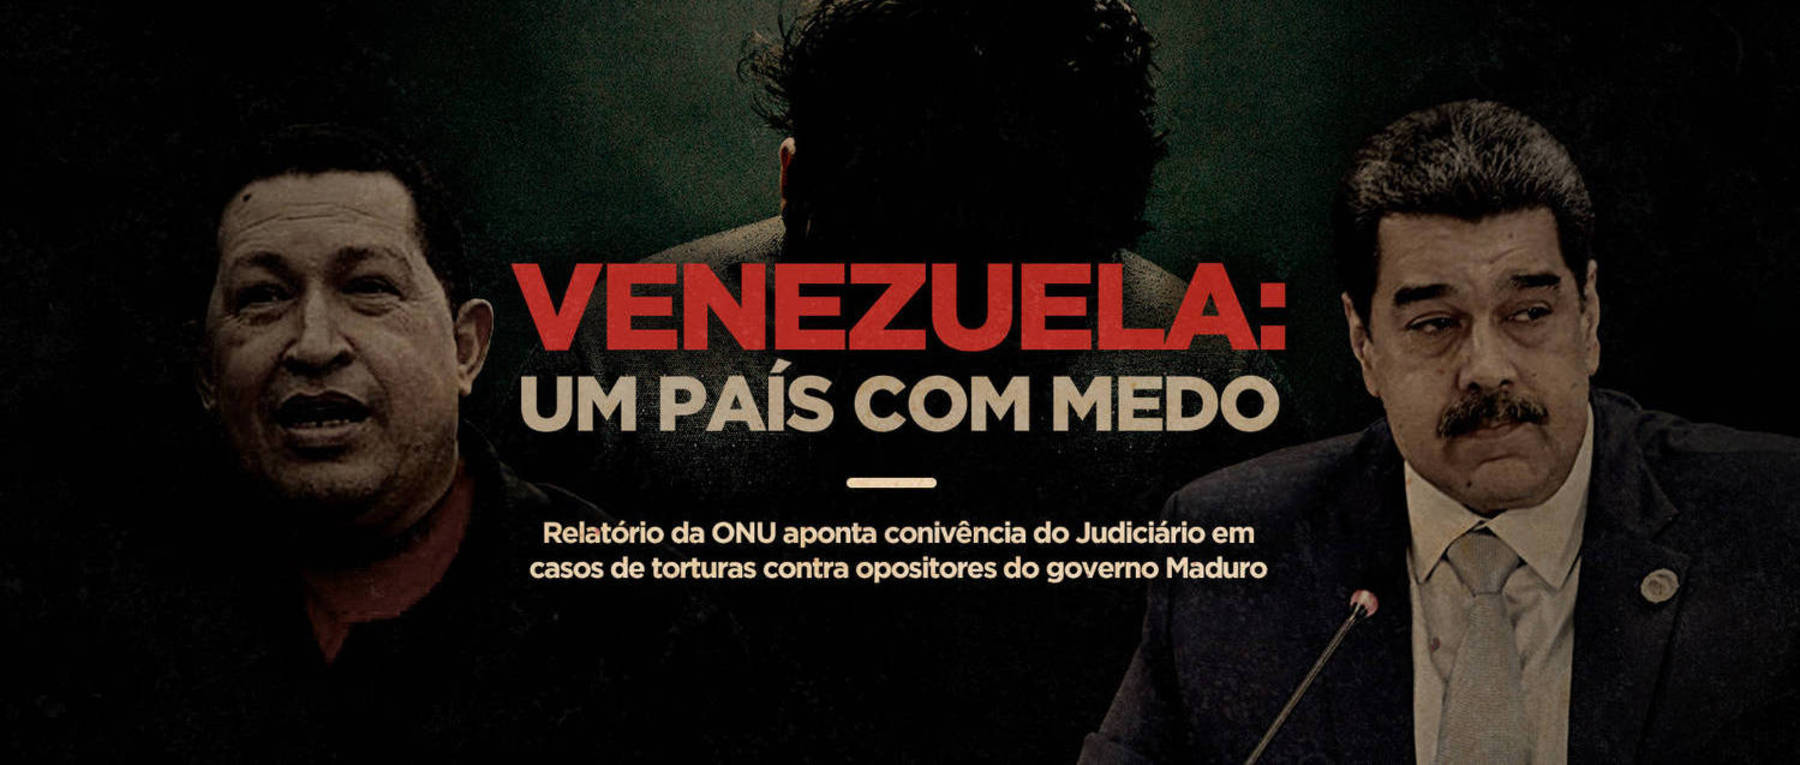 Venezuela: um país com medo